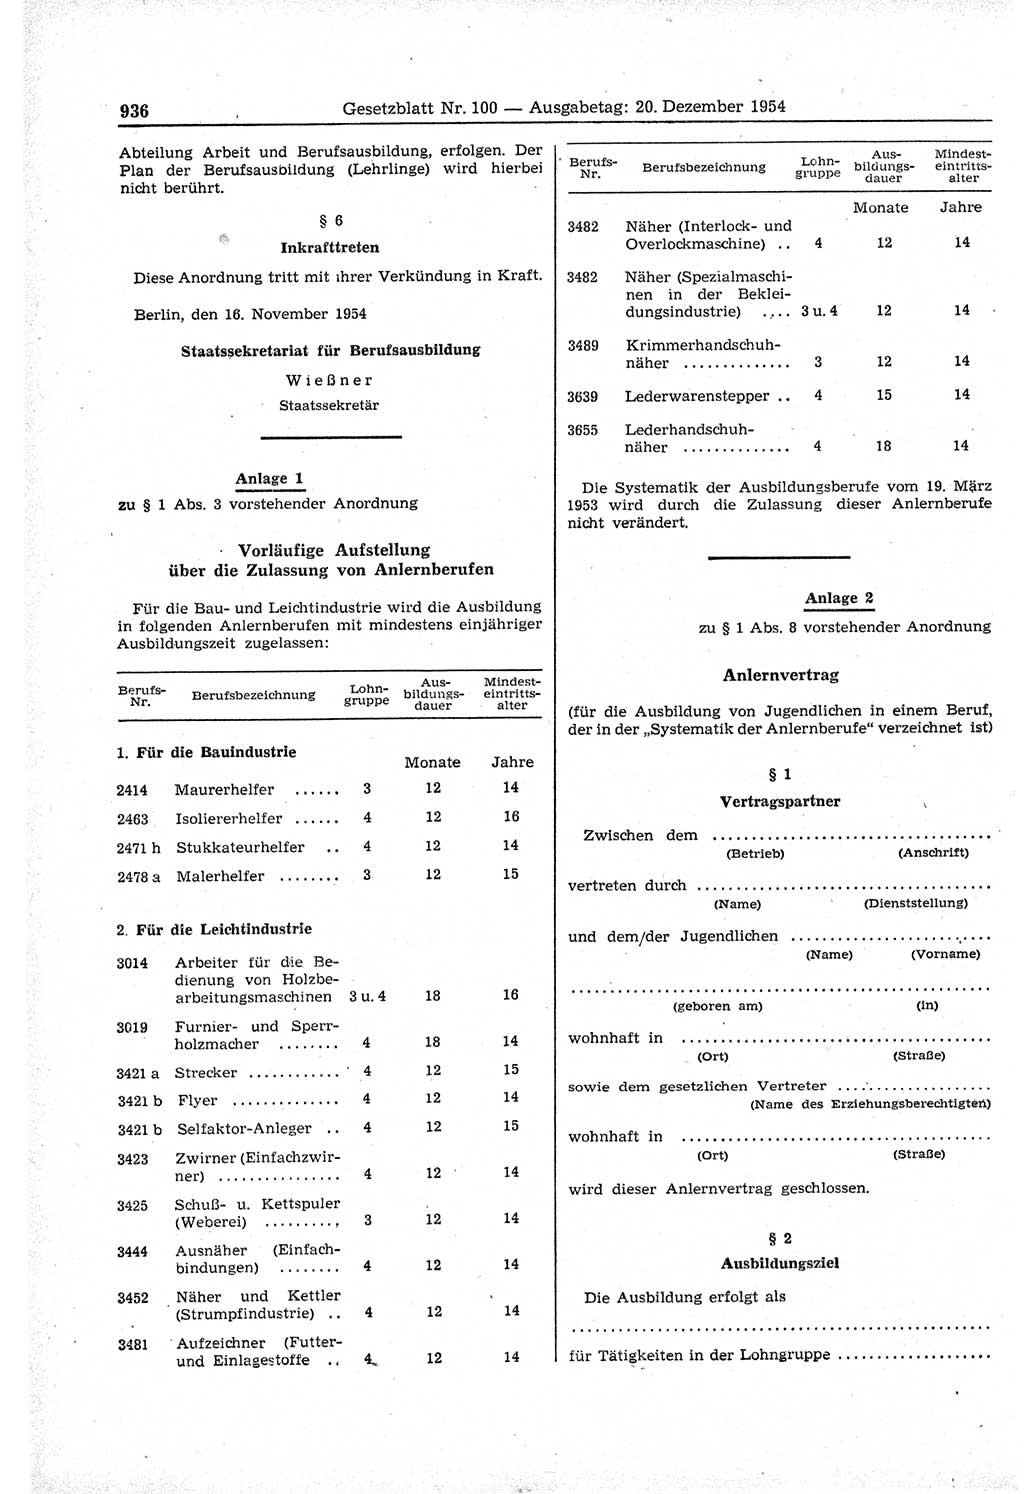 Gesetzblatt (GBl.) der Deutschen Demokratischen Republik (DDR) 1954, Seite 936 (GBl. DDR 1954, S. 936)